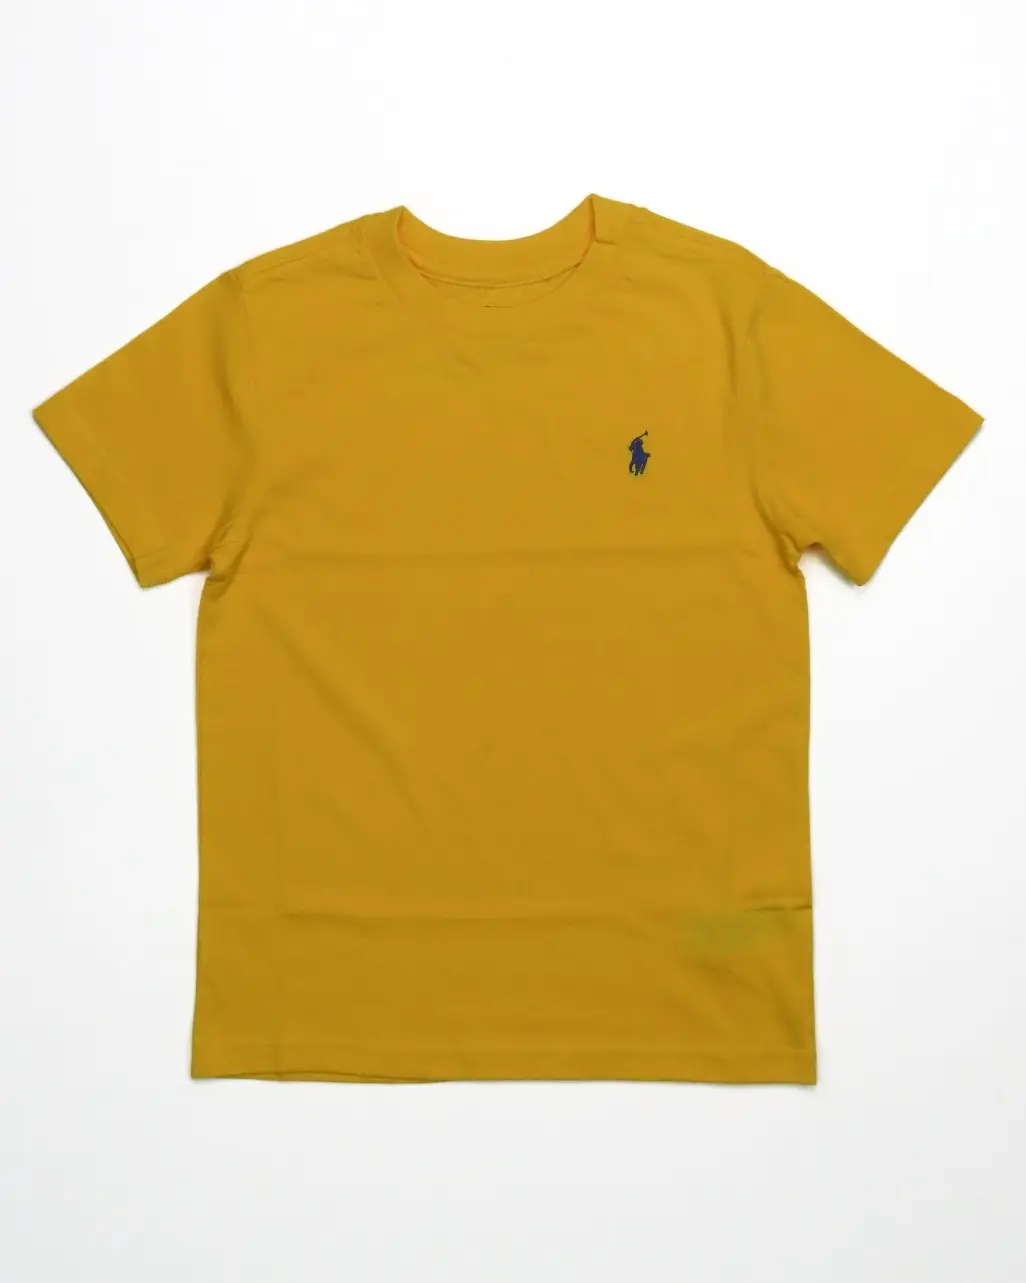 Экспортные излишки, Детские футболки для мальчиков, оптовая продажа, желтая футболка с коротким рукавом для мальчиков из Индии